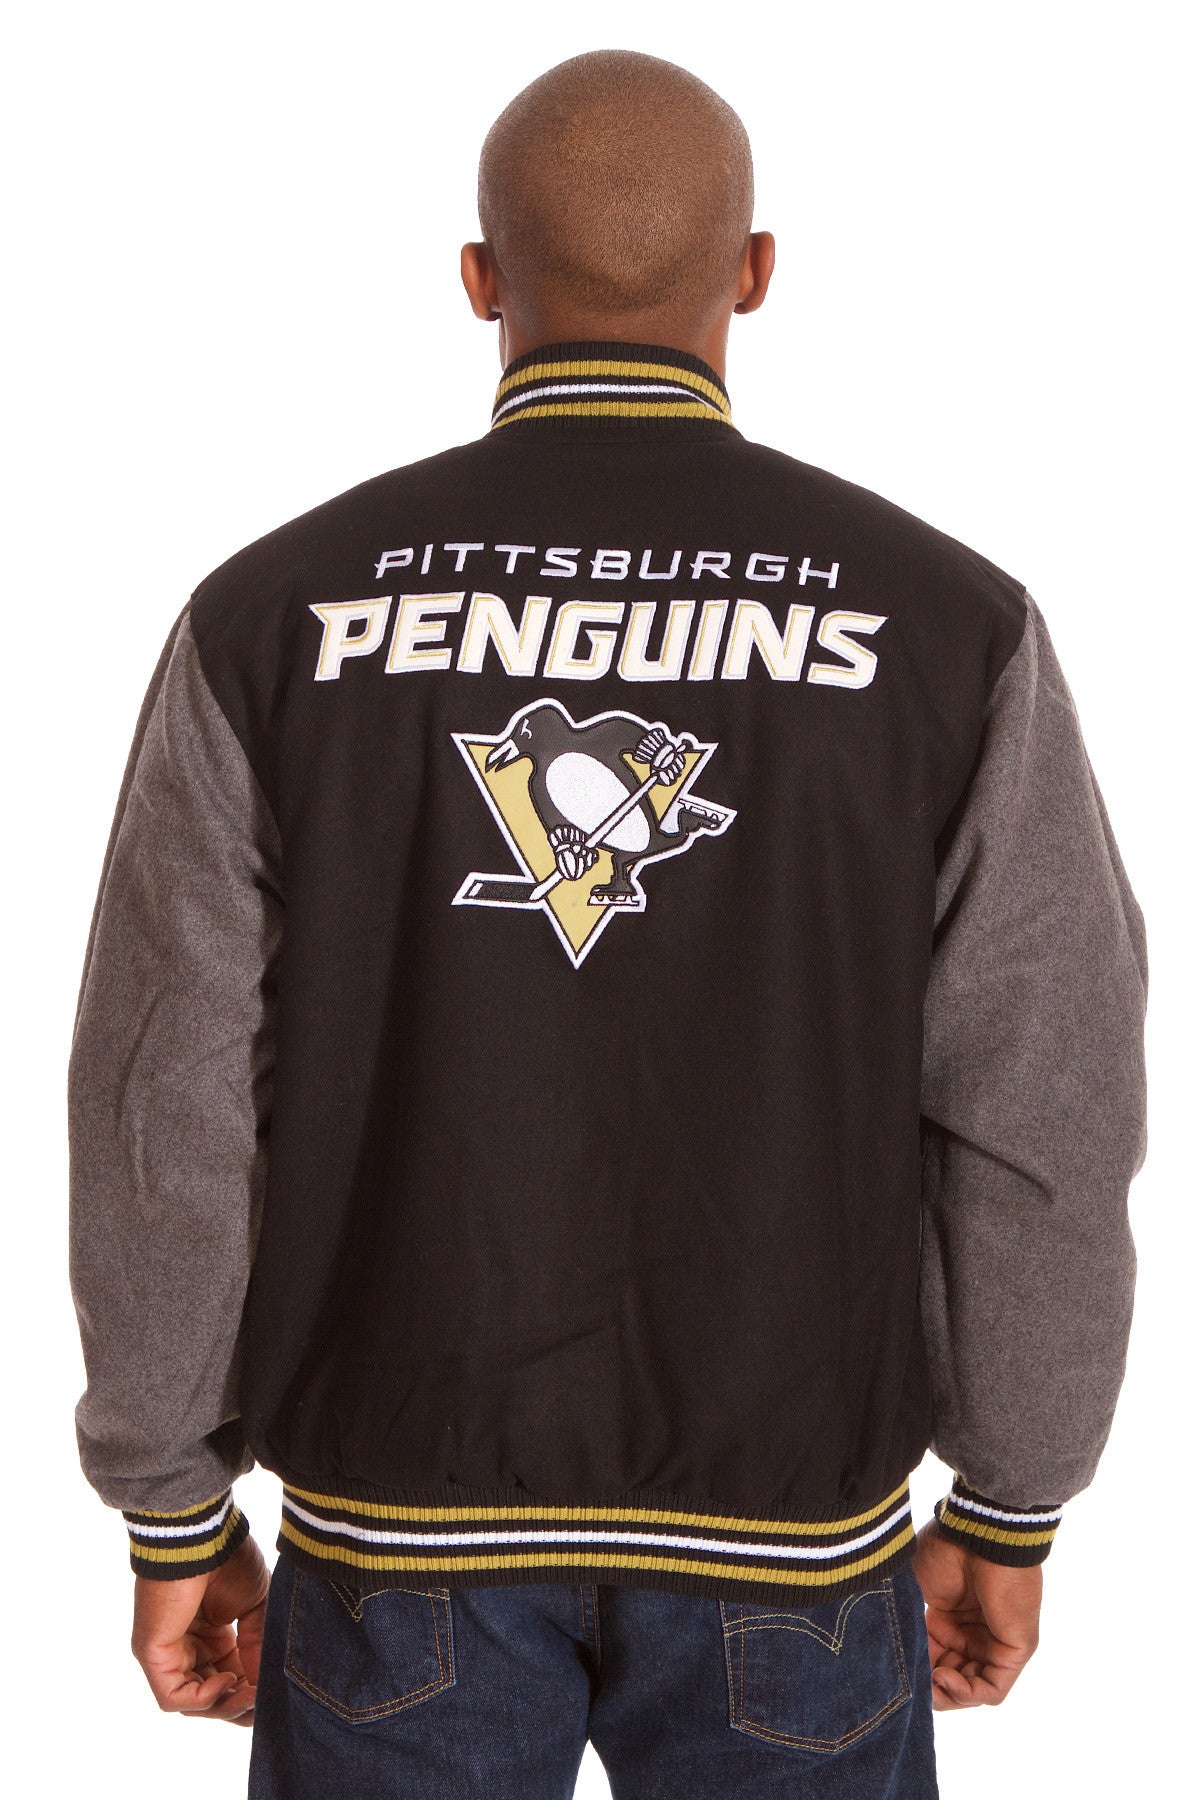 Pittsburgh Penguins Reversible Wool Jacket